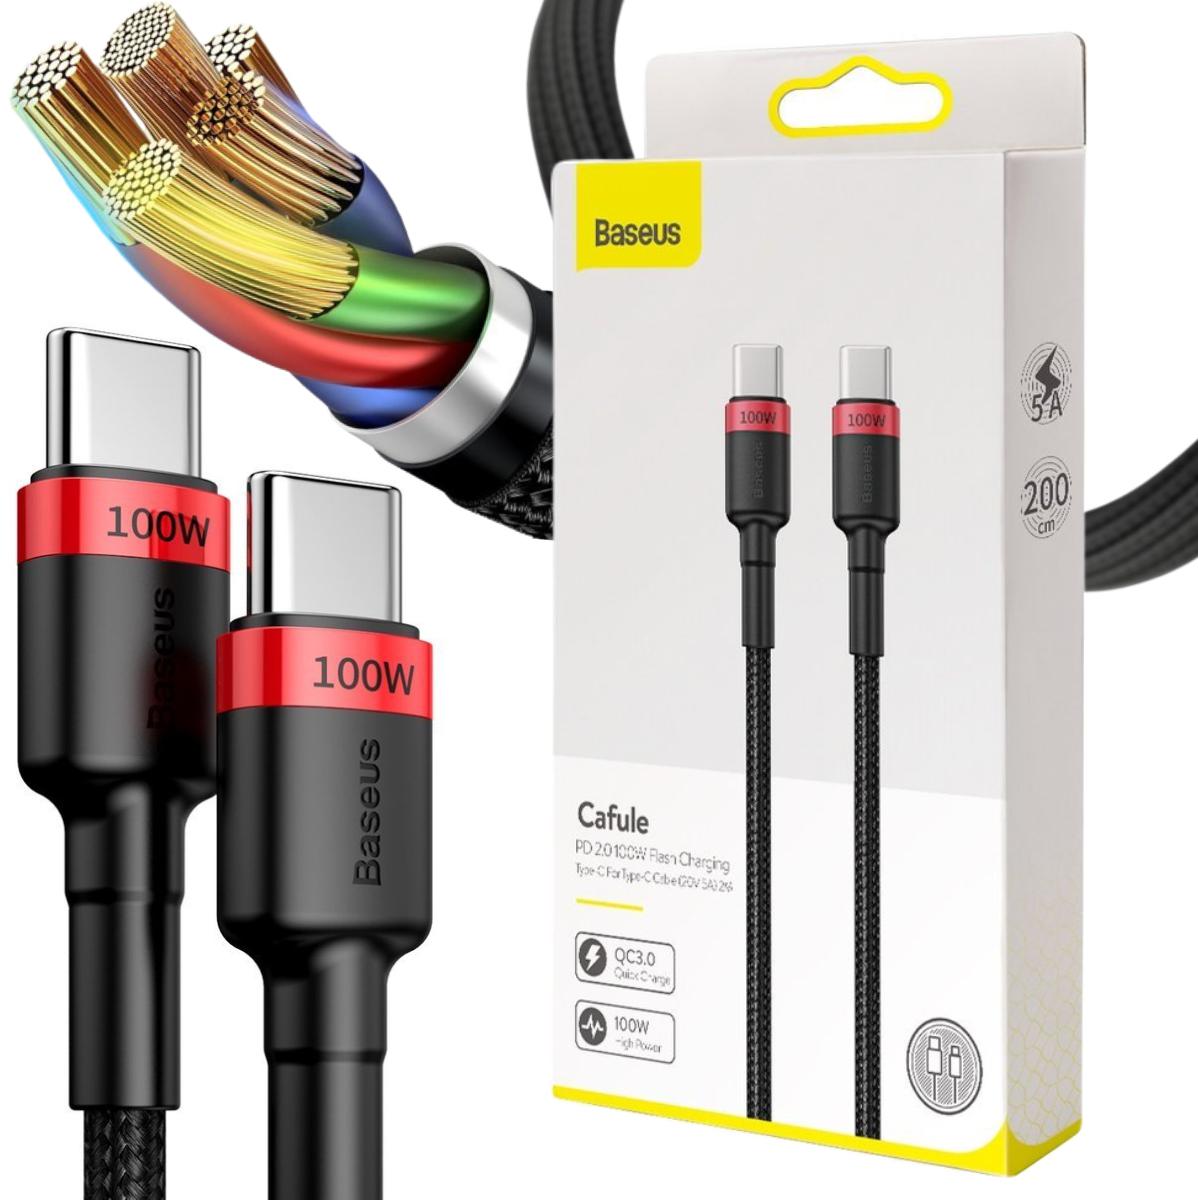 Baseus Cafule nylonowy kabel przewód USB Typ C Power Delivery 2.0 QC 3.0 100W 20V 5A 2m (CATKLF-AL91) - najważniejsze cechy: